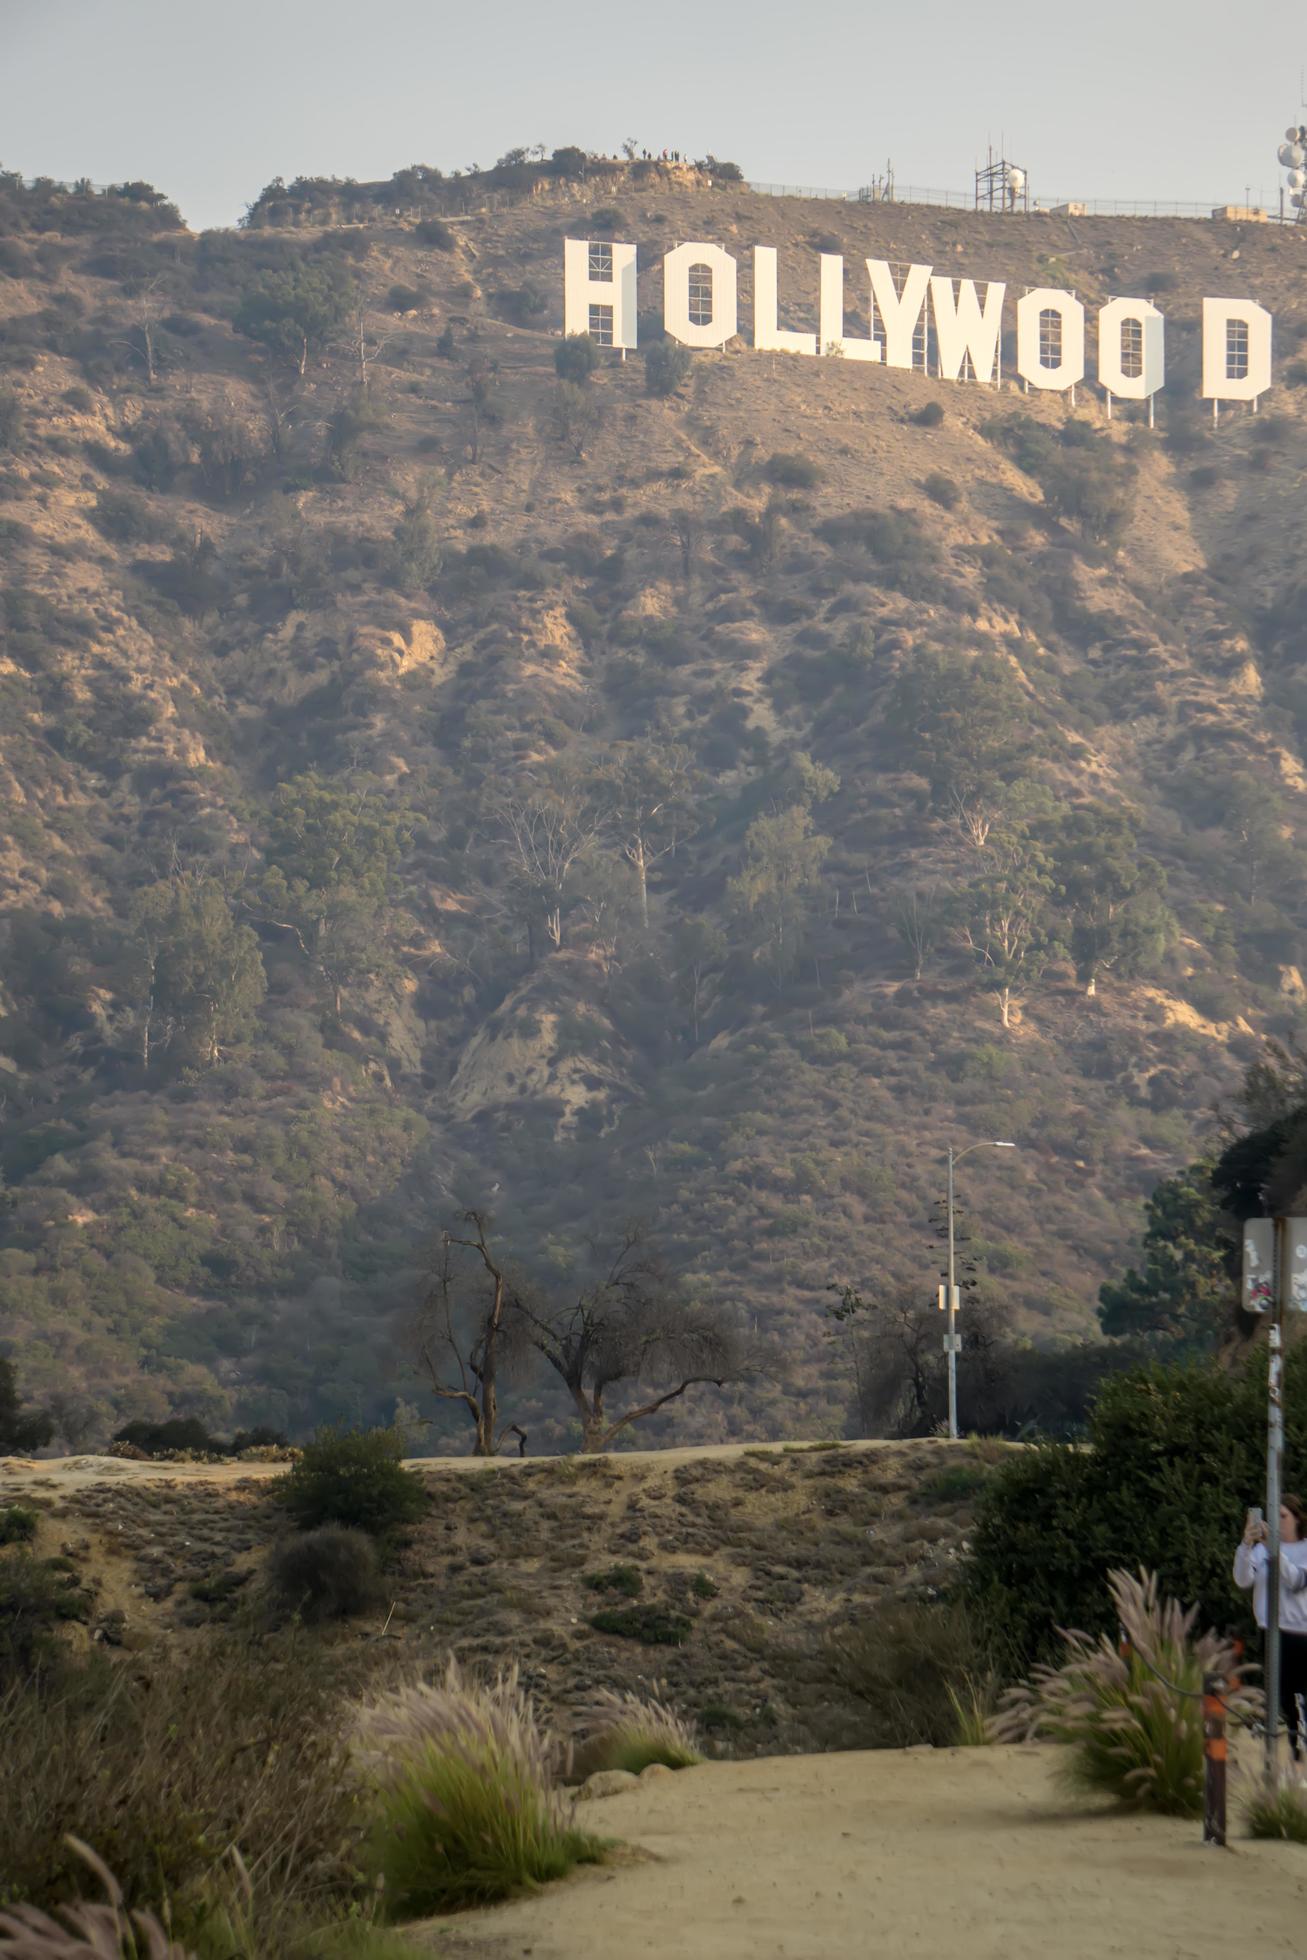 Famoso sinal de Hollywood em uma colina à distância fotos, imagens